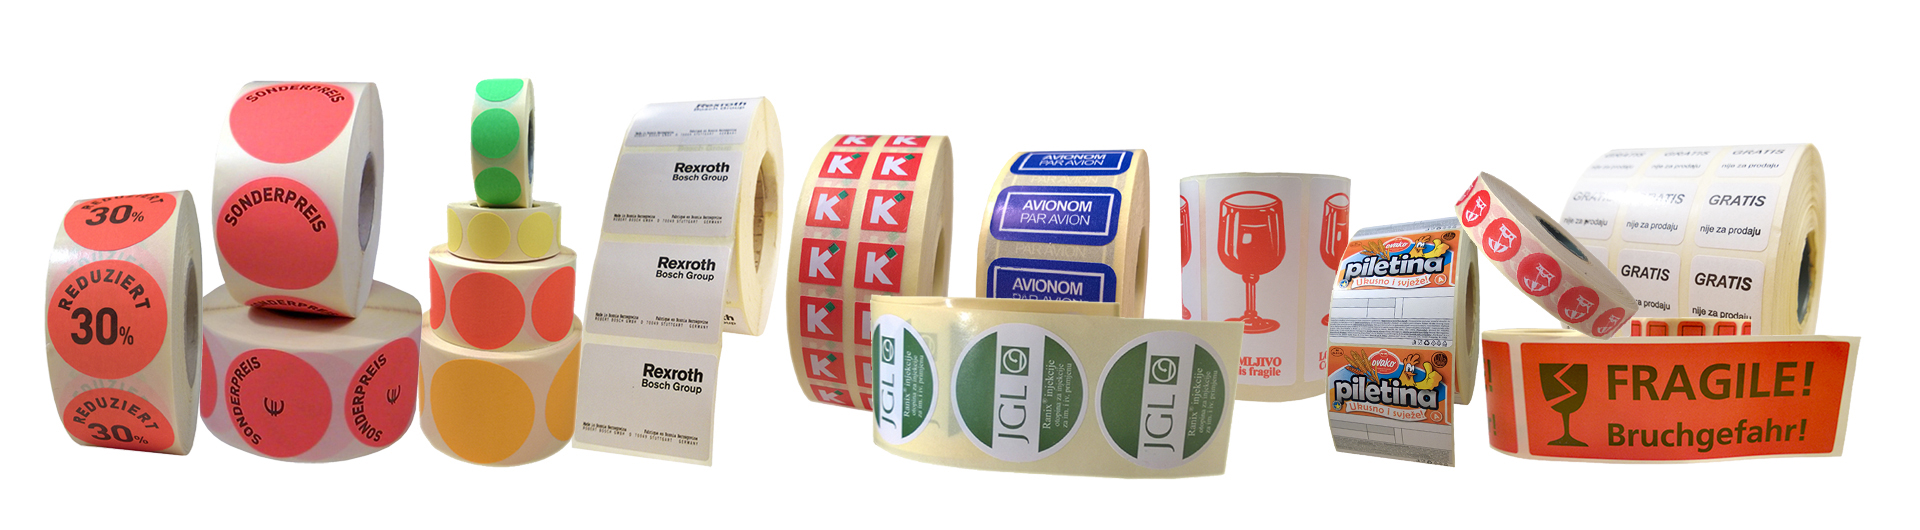 ROL Etiketten auf Rolle ist Etikettenhersteller für selbstklebende Etiketten auf Rolle.